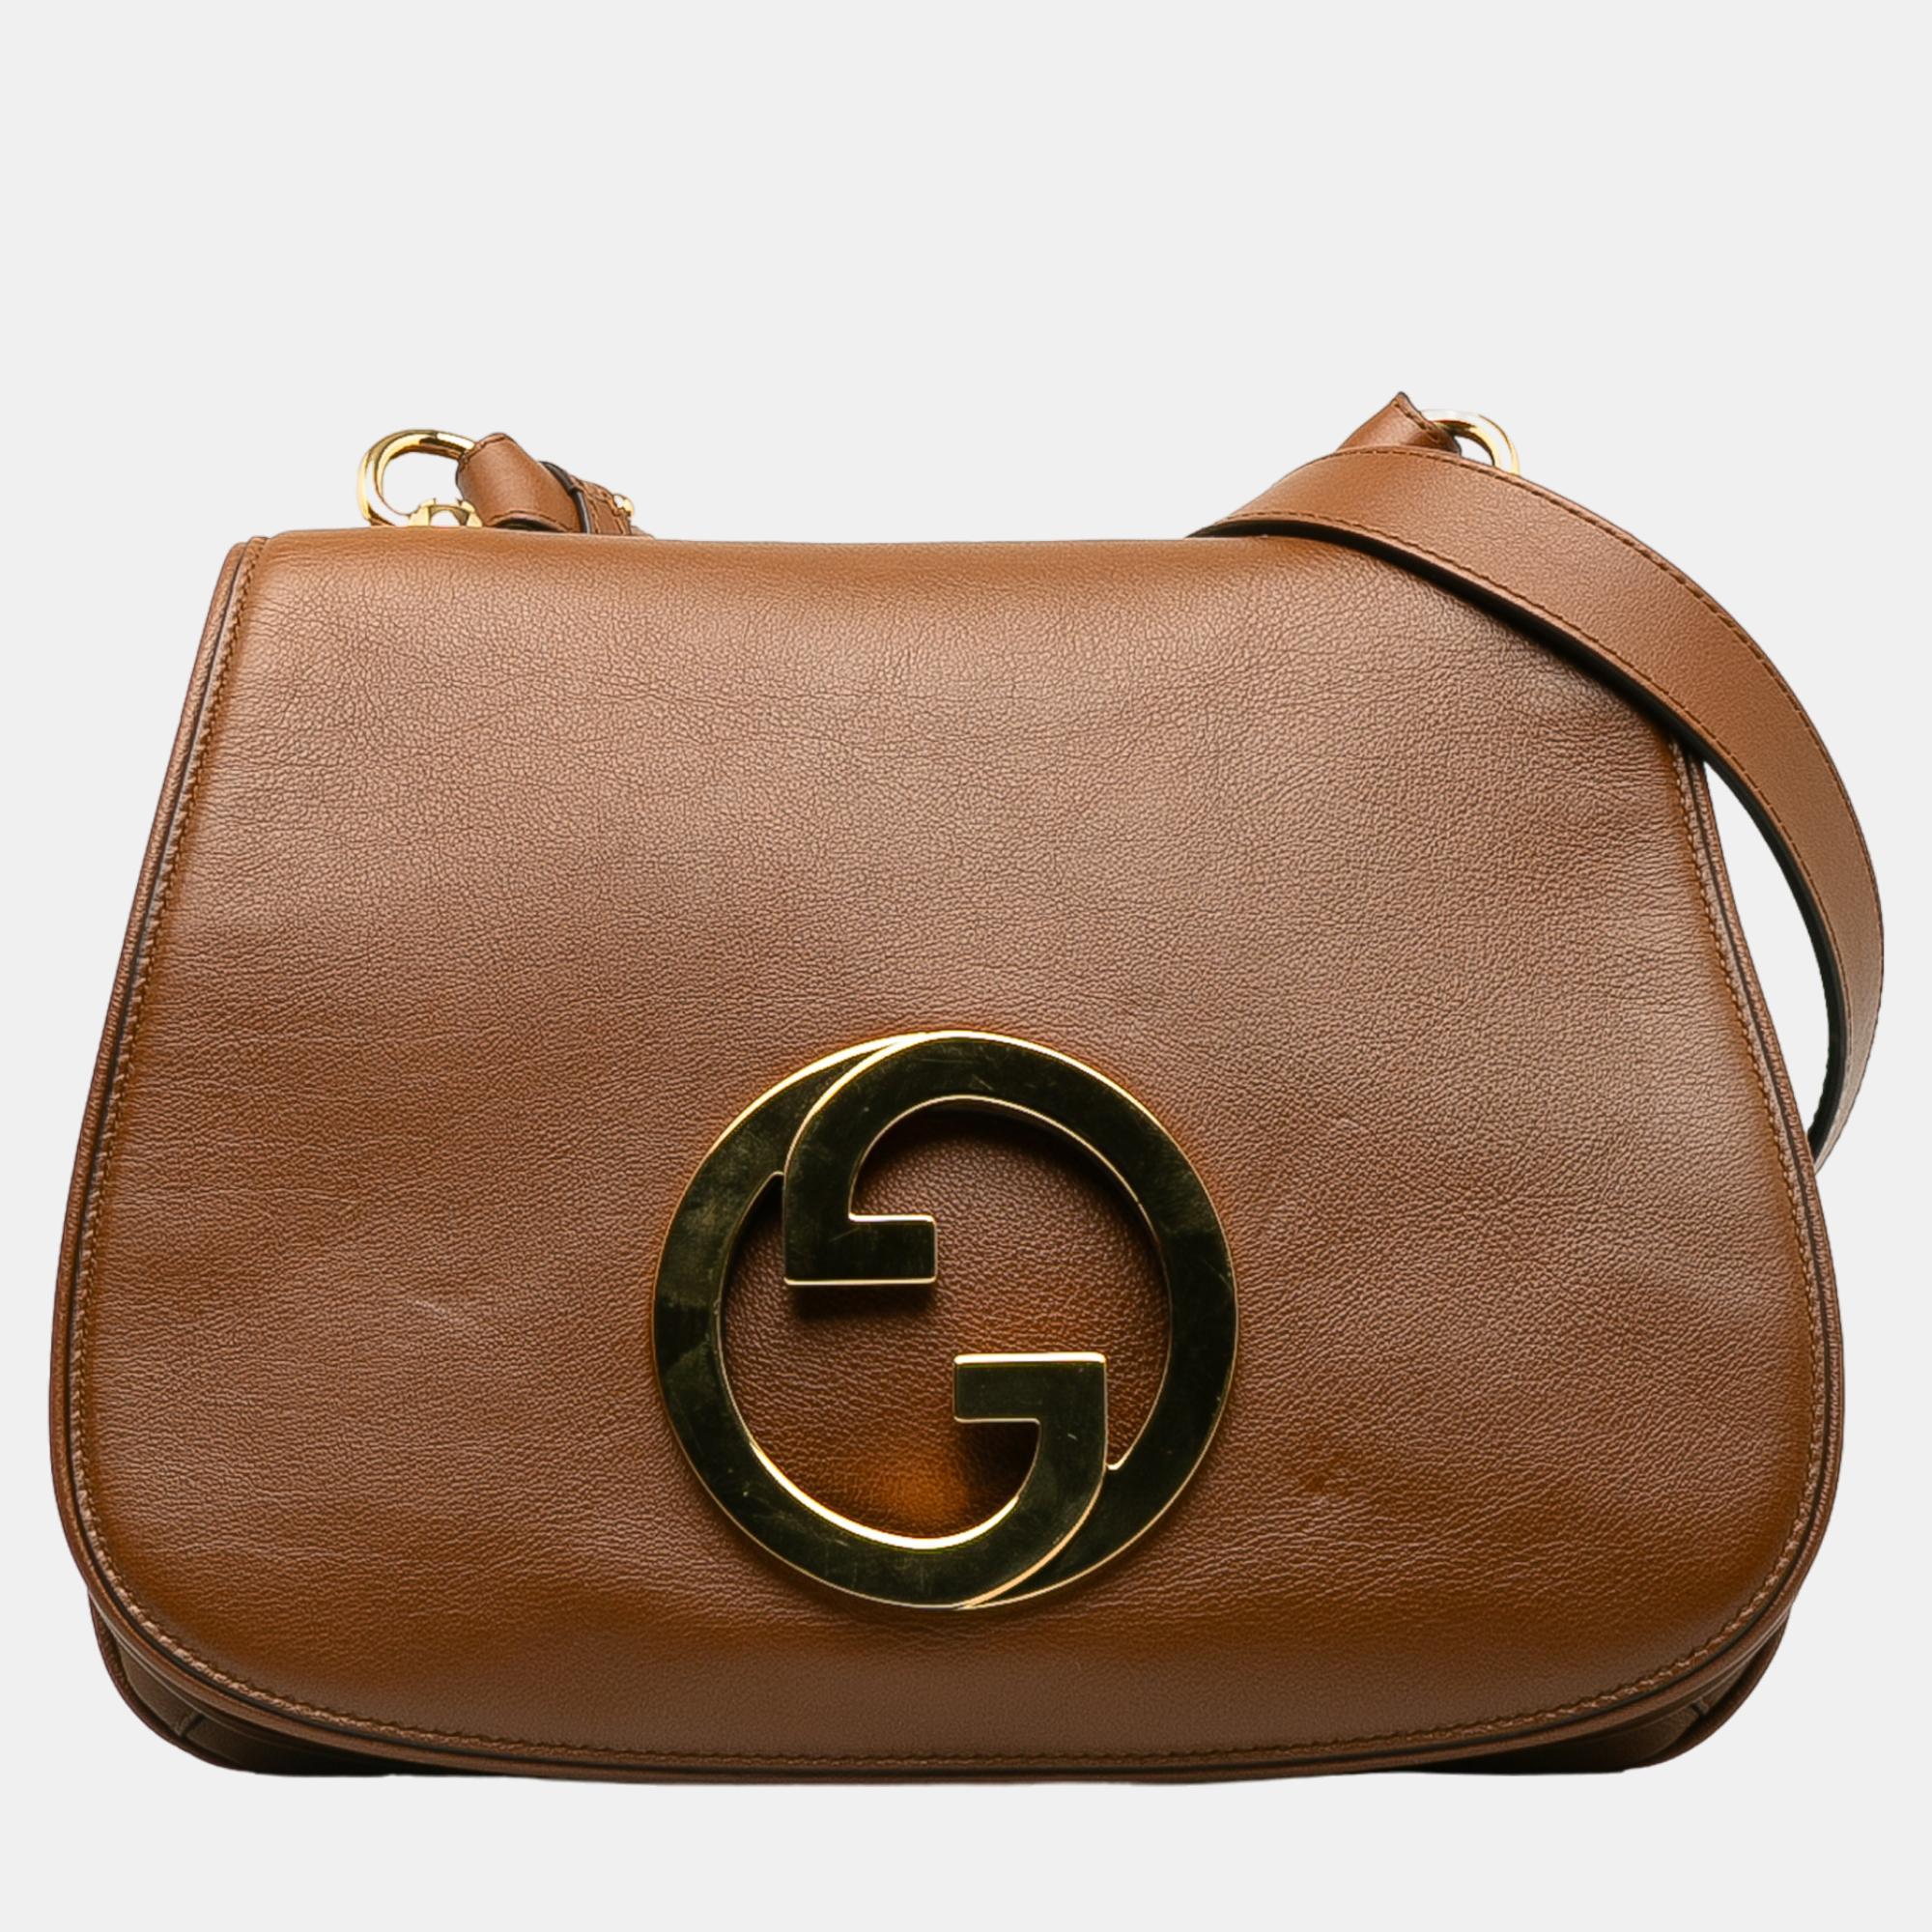 Gucci brown medium blondie bag